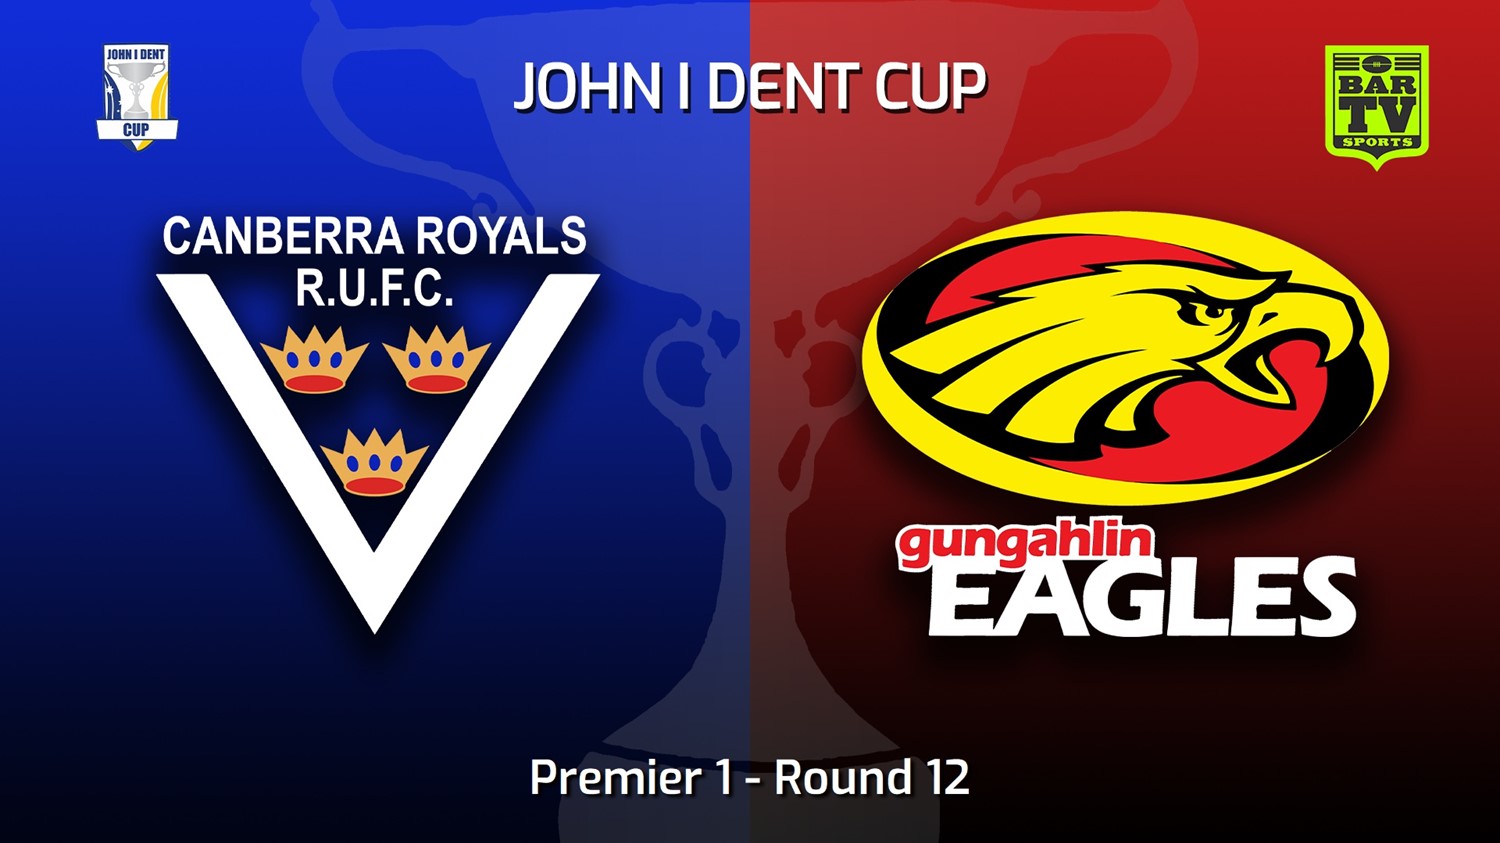 220716-John I Dent (ACT) Round 12 - Premier 1 - Canberra Royals v Gungahlin Eagles Slate Image